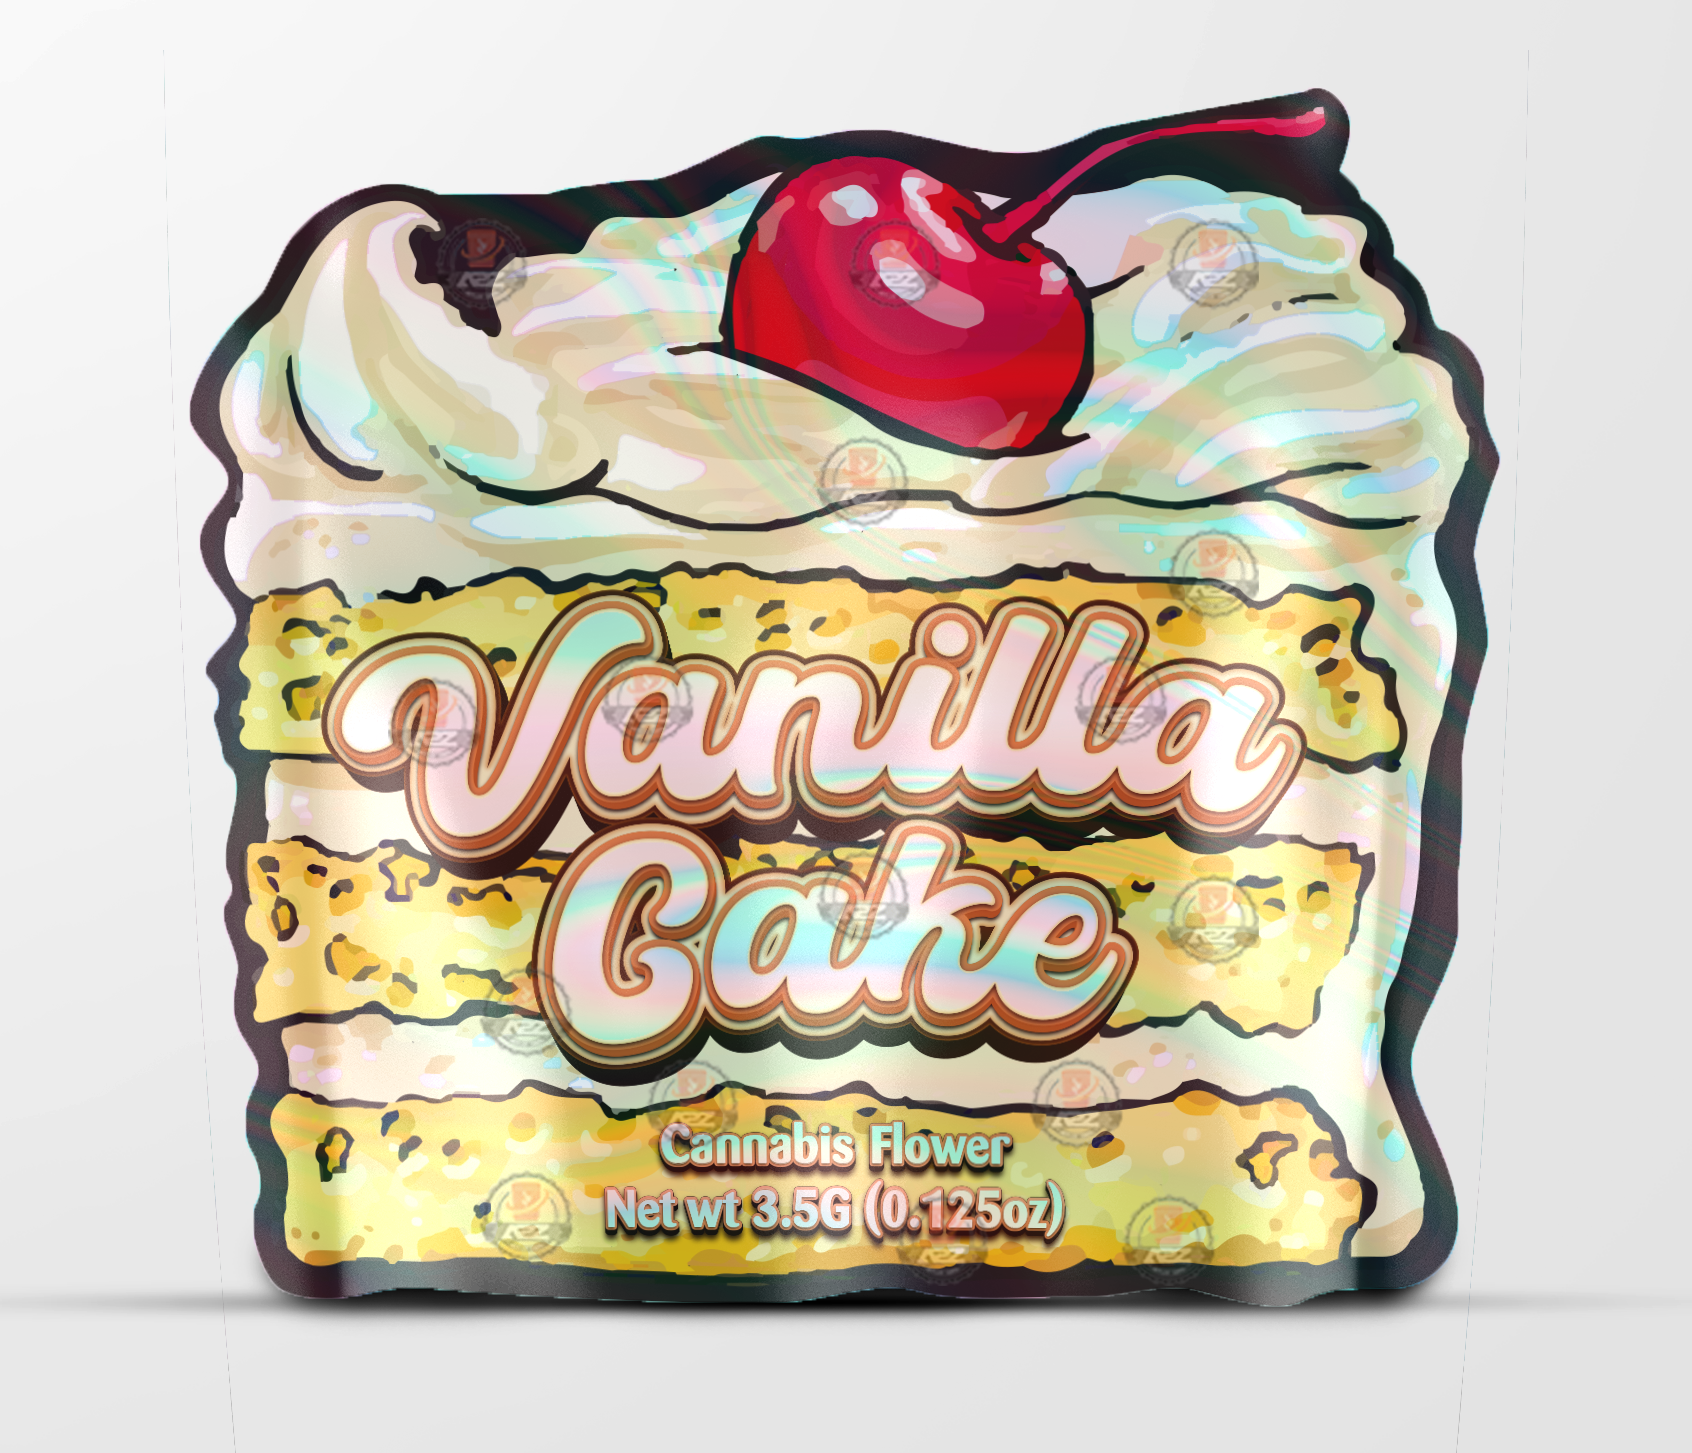 Black Unicorn Vanilla Cake cut out Holographic Mylar bag 3.5g